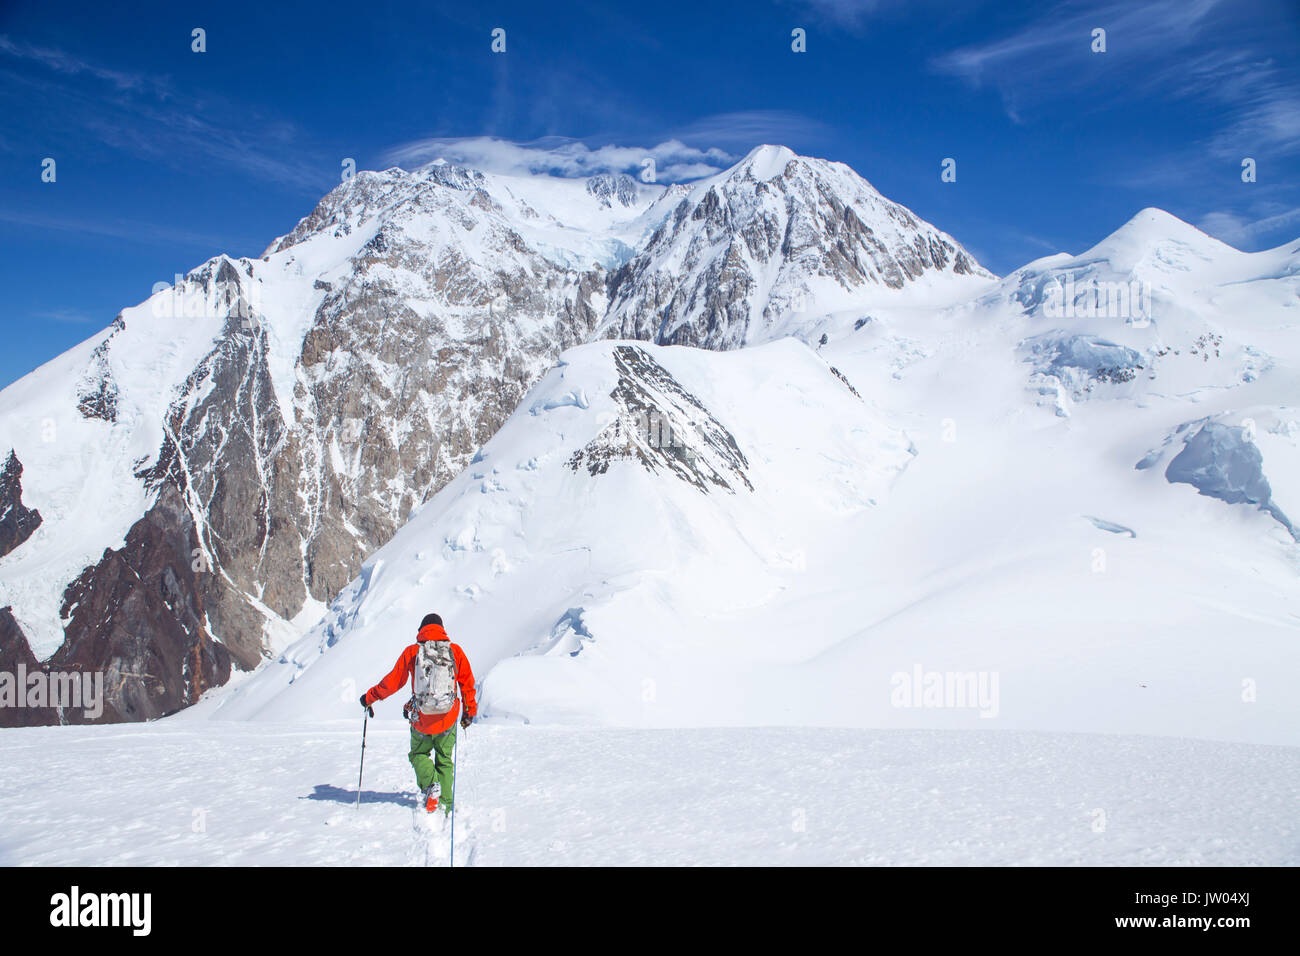 L'alpiniste en ordre décroissant Mont Capps, avec vues sur Denali en Alaska. Les grimpeurs sont reliés par une corde, pour les protéger de tomber au fond d'une crevasse de glacier. Denali National Park est un endroit idéal pour le ski de randonnée et l'escalade tours. Banque D'Images